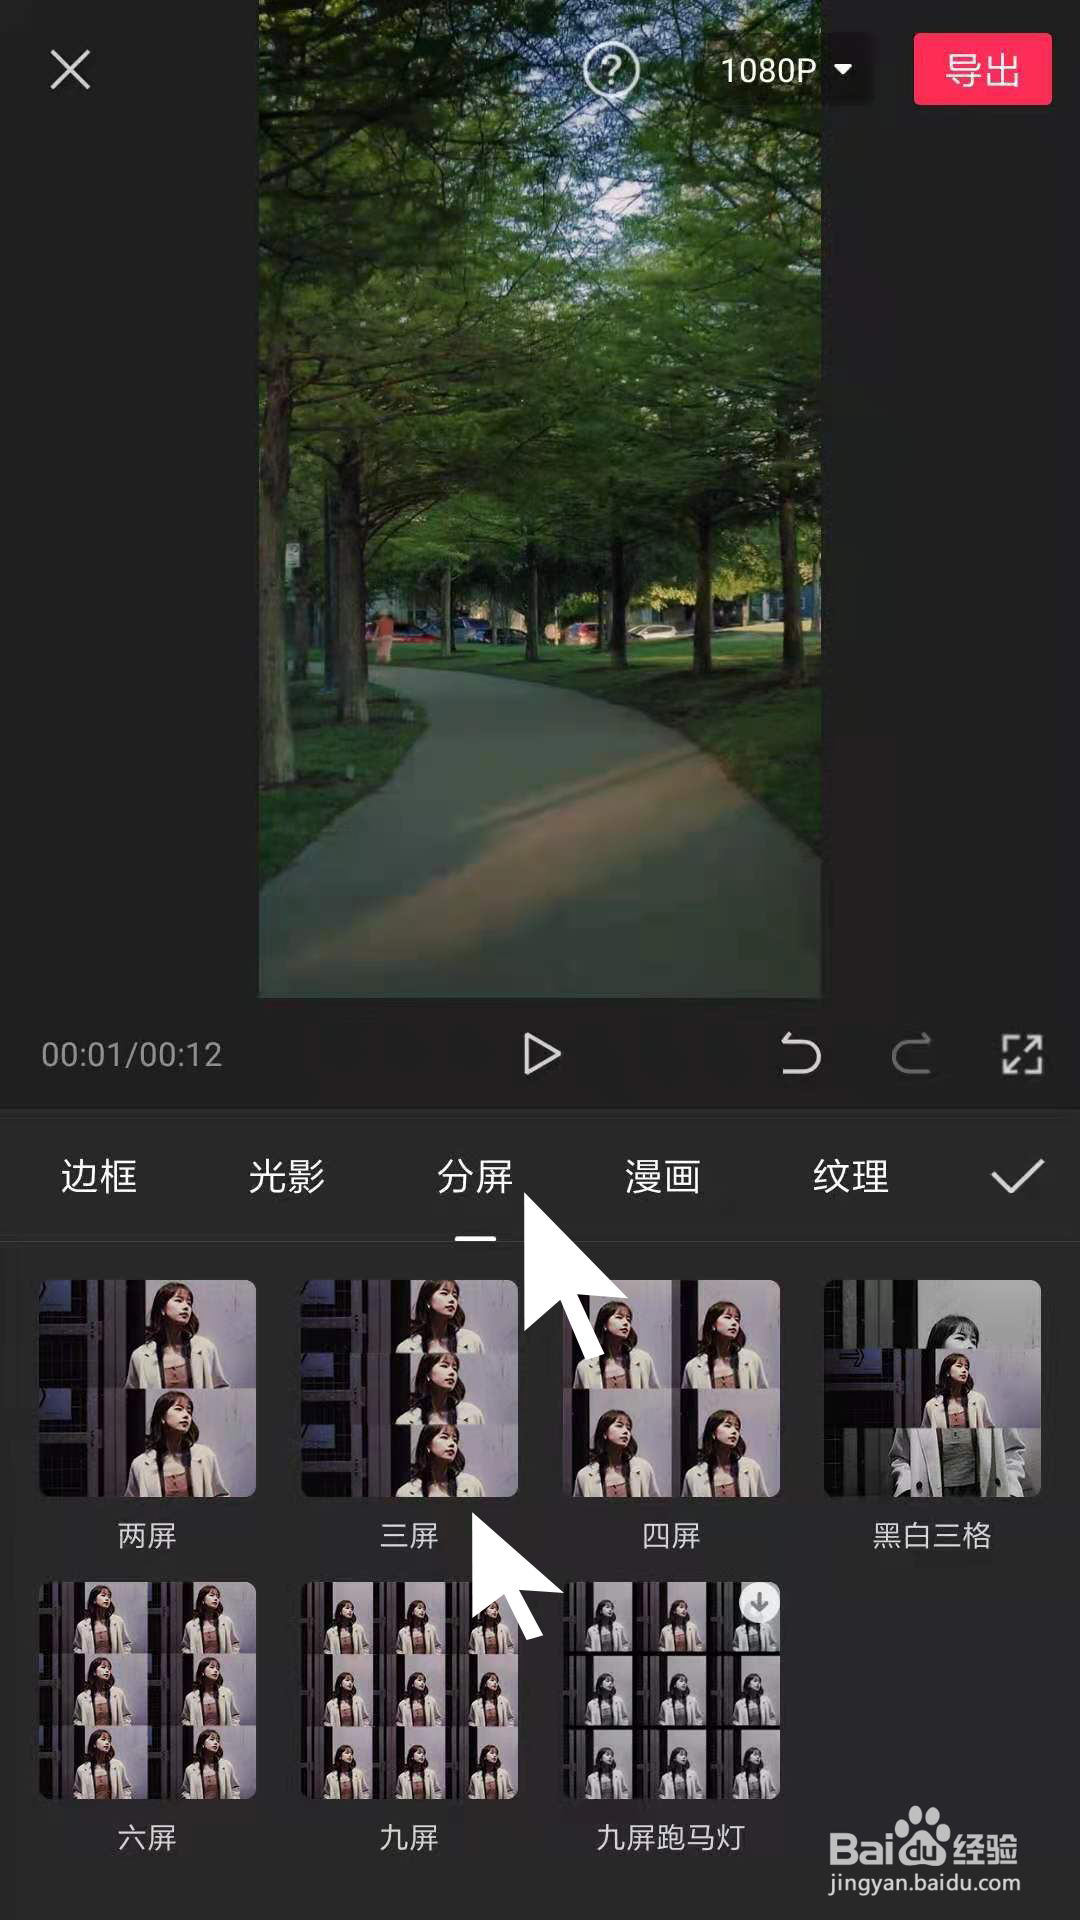 在剪映app中,如何给视频进行分屏显示